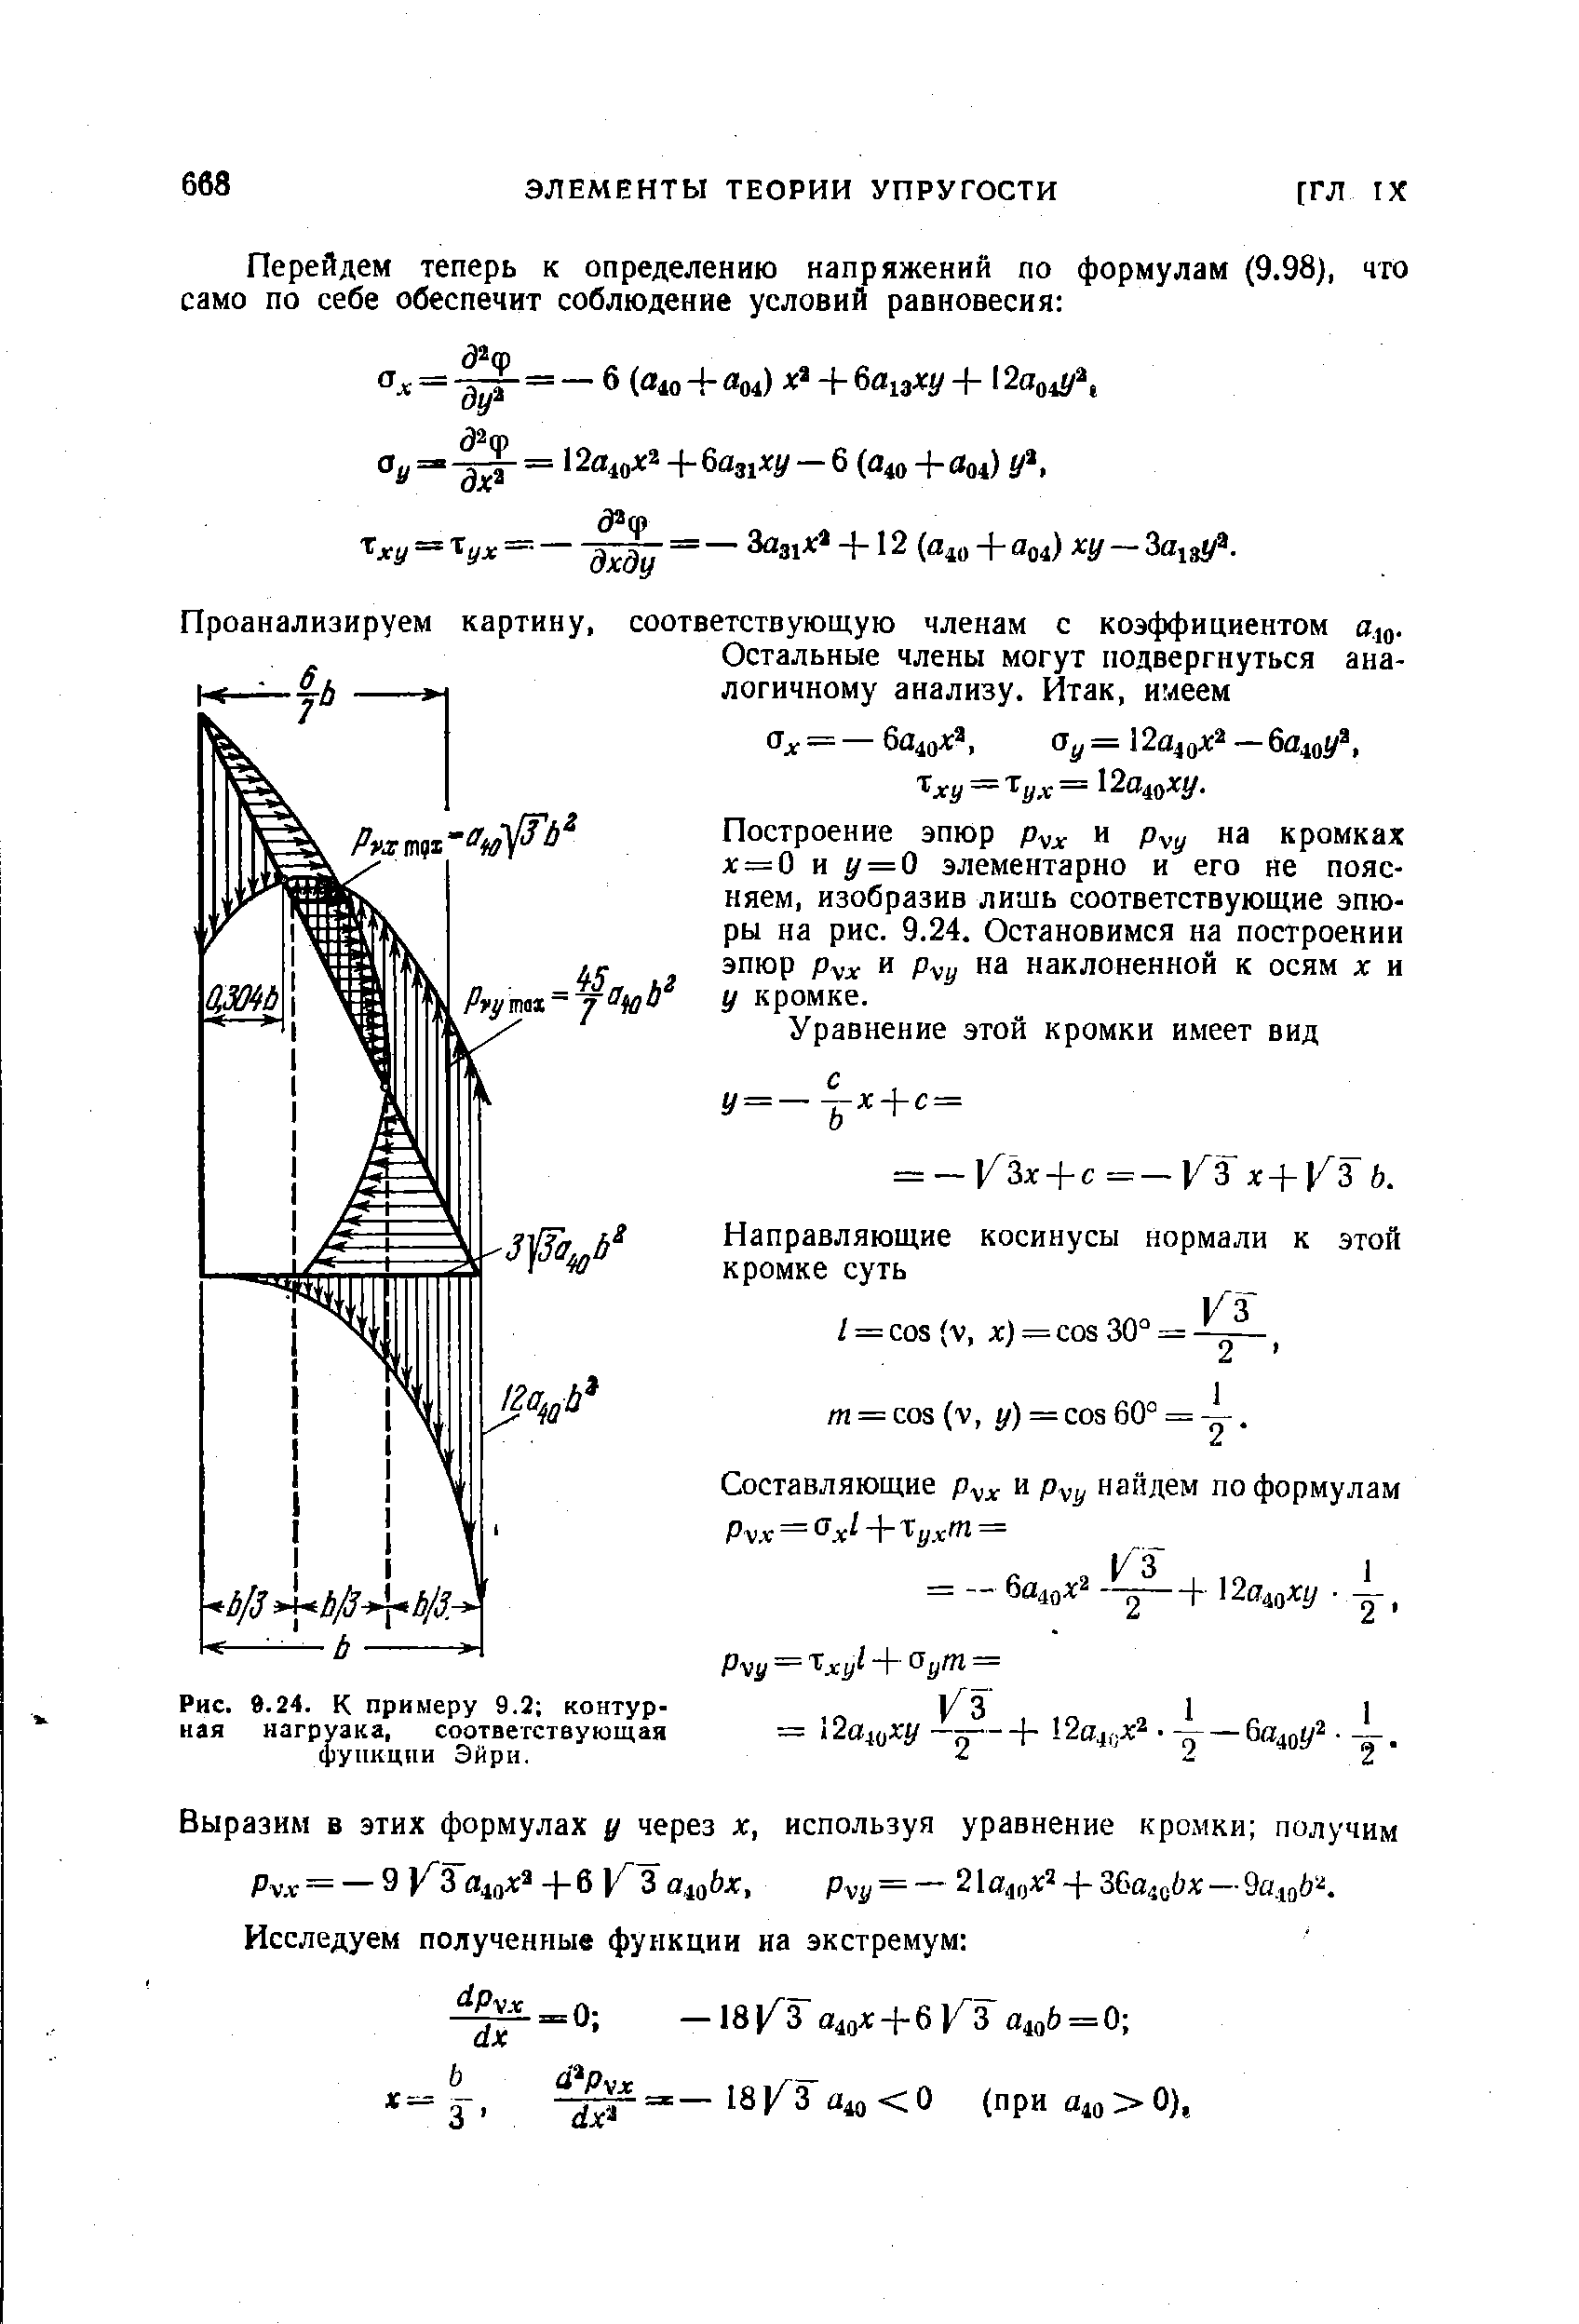 Рис. 9.24. К примеру 9.2 контурная нагрузка, соответствующая функции Эйри.
